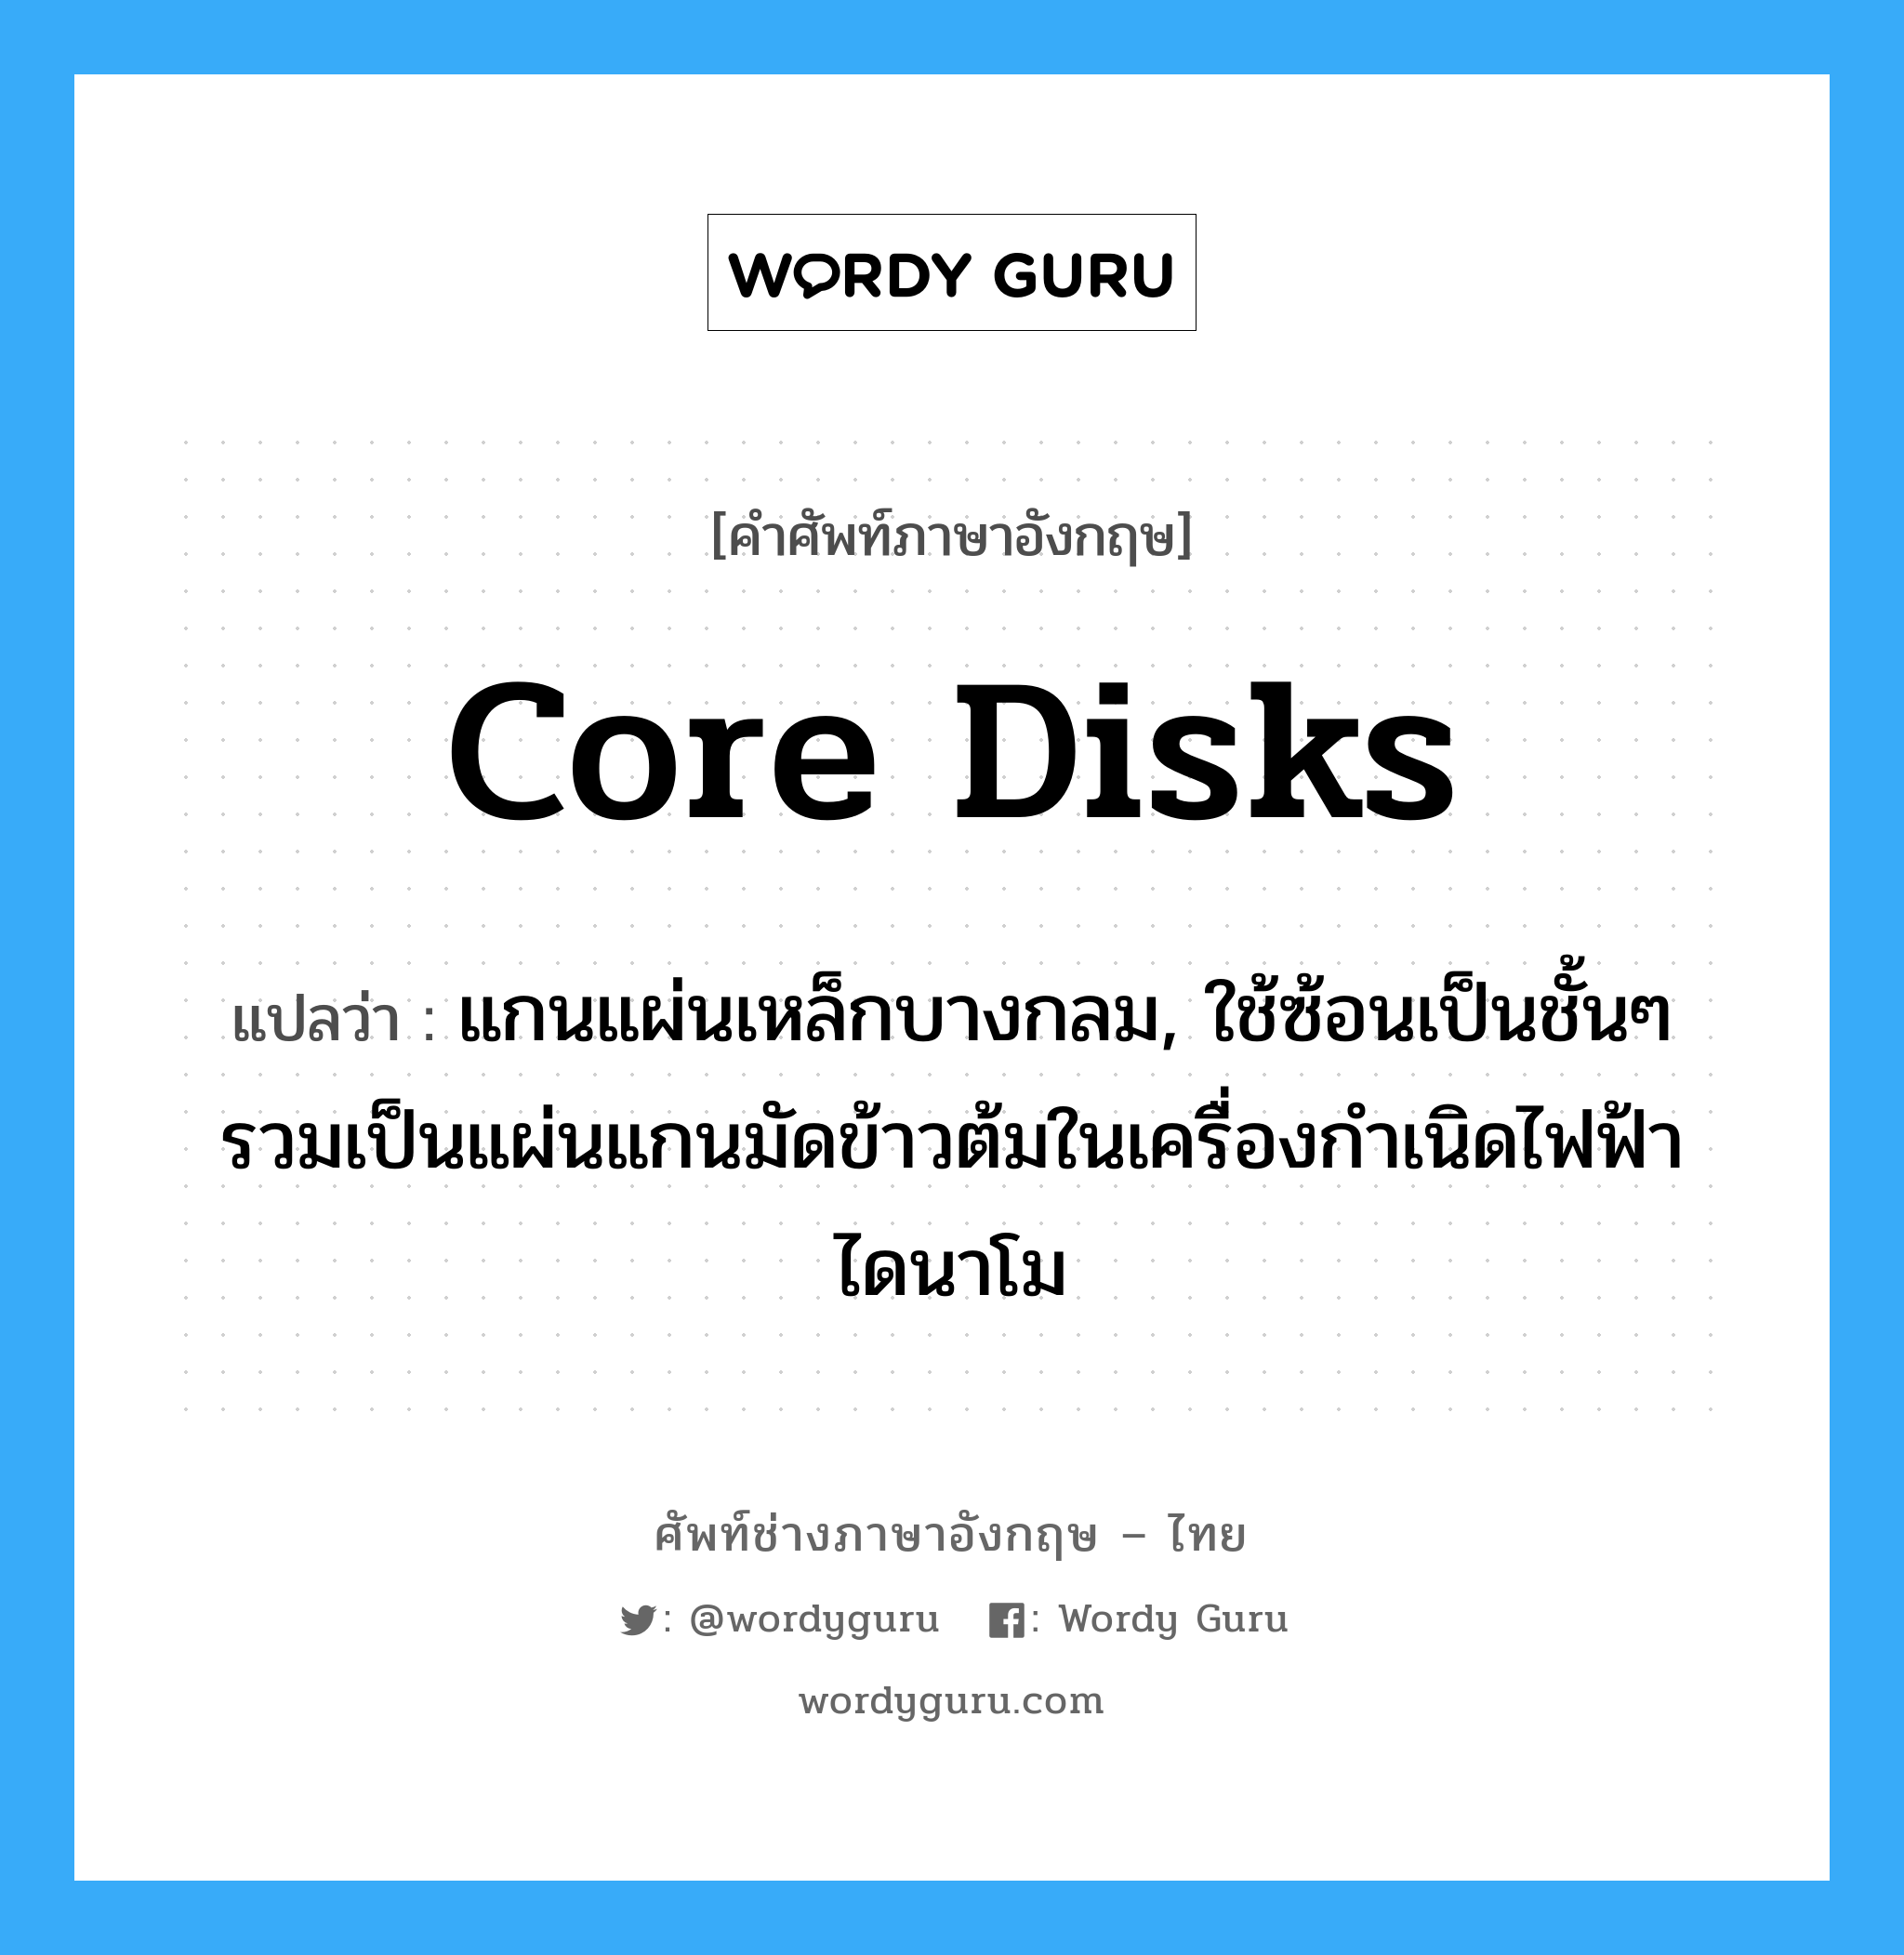 core disks แปลว่า?, คำศัพท์ช่างภาษาอังกฤษ - ไทย core disks คำศัพท์ภาษาอังกฤษ core disks แปลว่า แกนแผ่นเหล็กบางกลม, ใช้ซ้อนเป็นชั้นๆ รวมเป็นแผ่นแกนมัดข้าวต้มในเครื่องกำเนิดไฟฟ้าไดนาโม